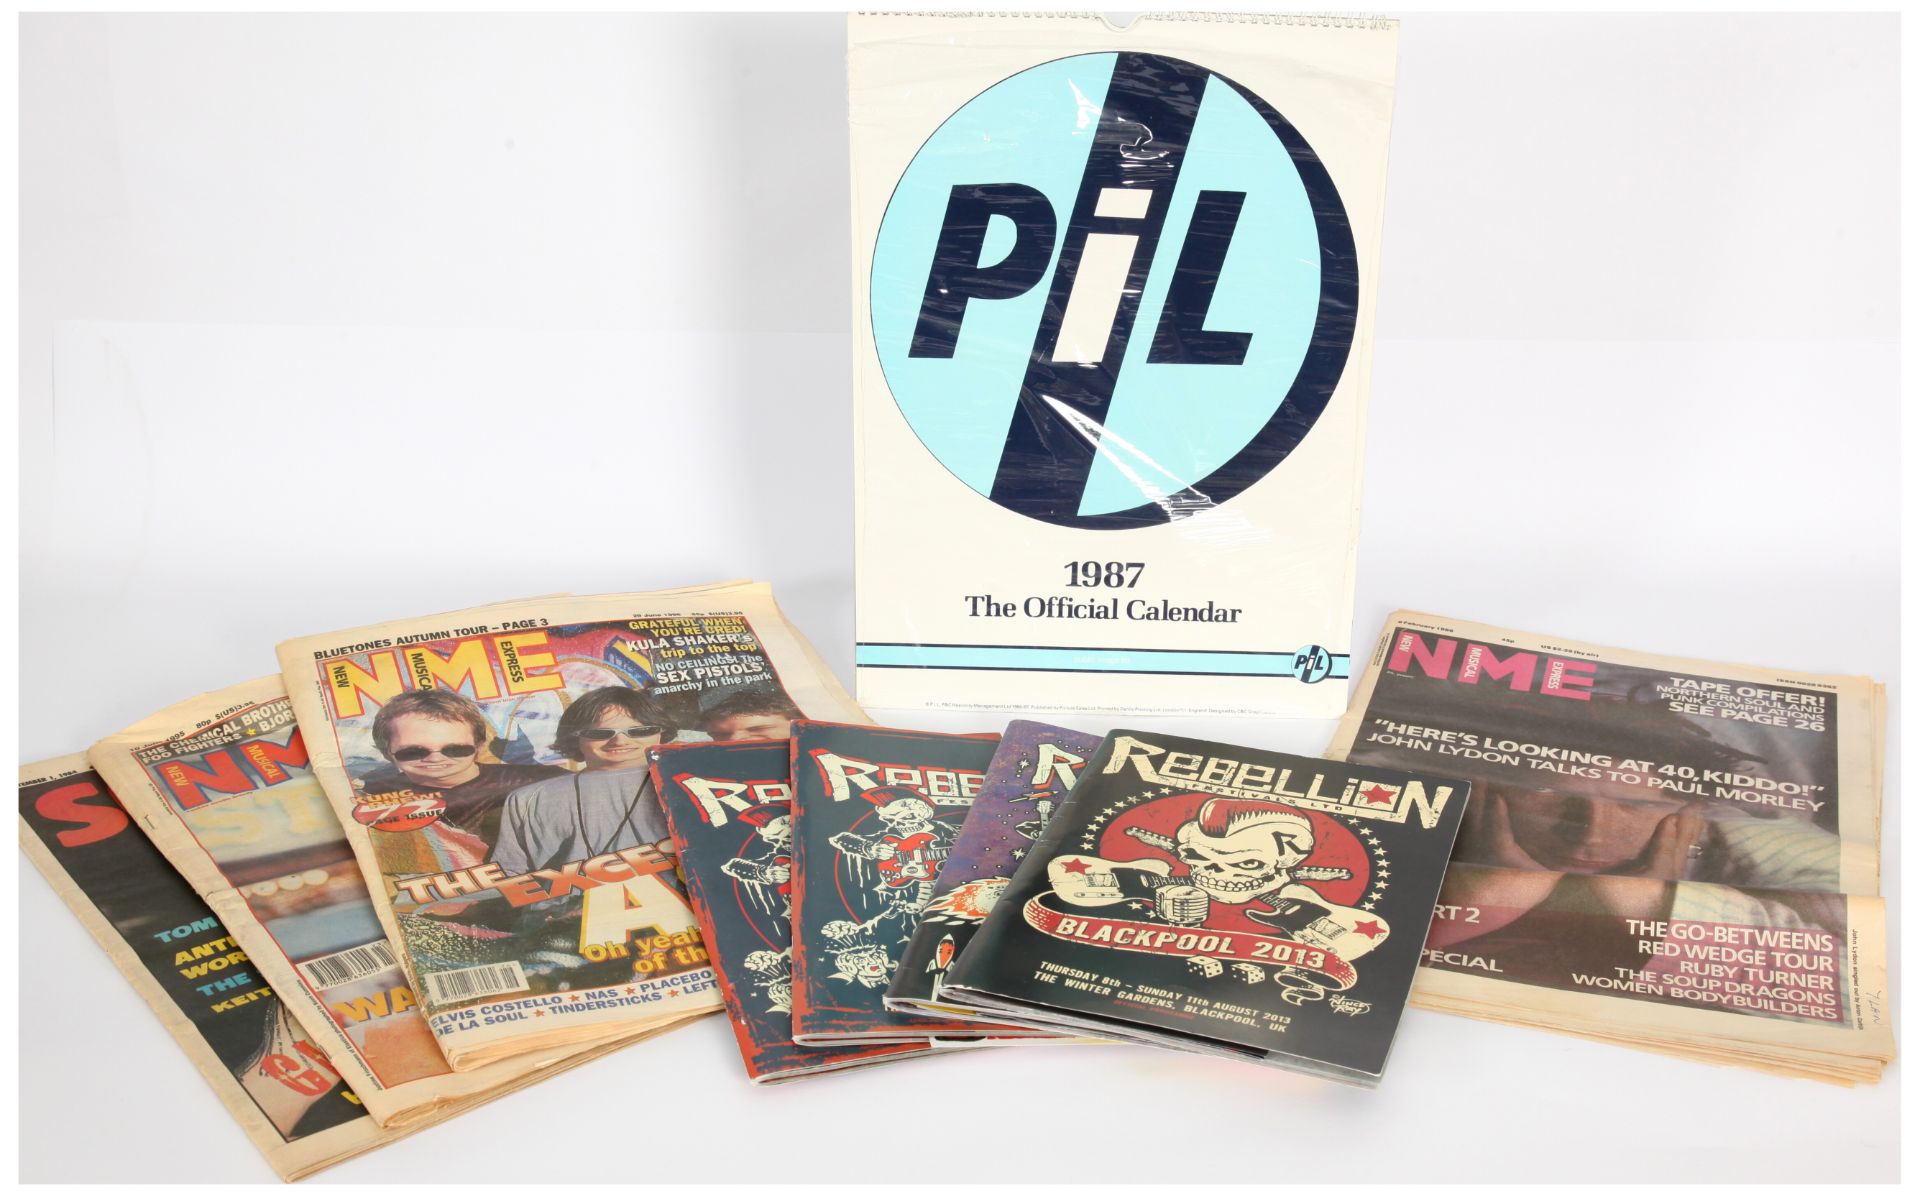 Sex Pistols and Public Image Related Vinyl - Bild 2 aus 2